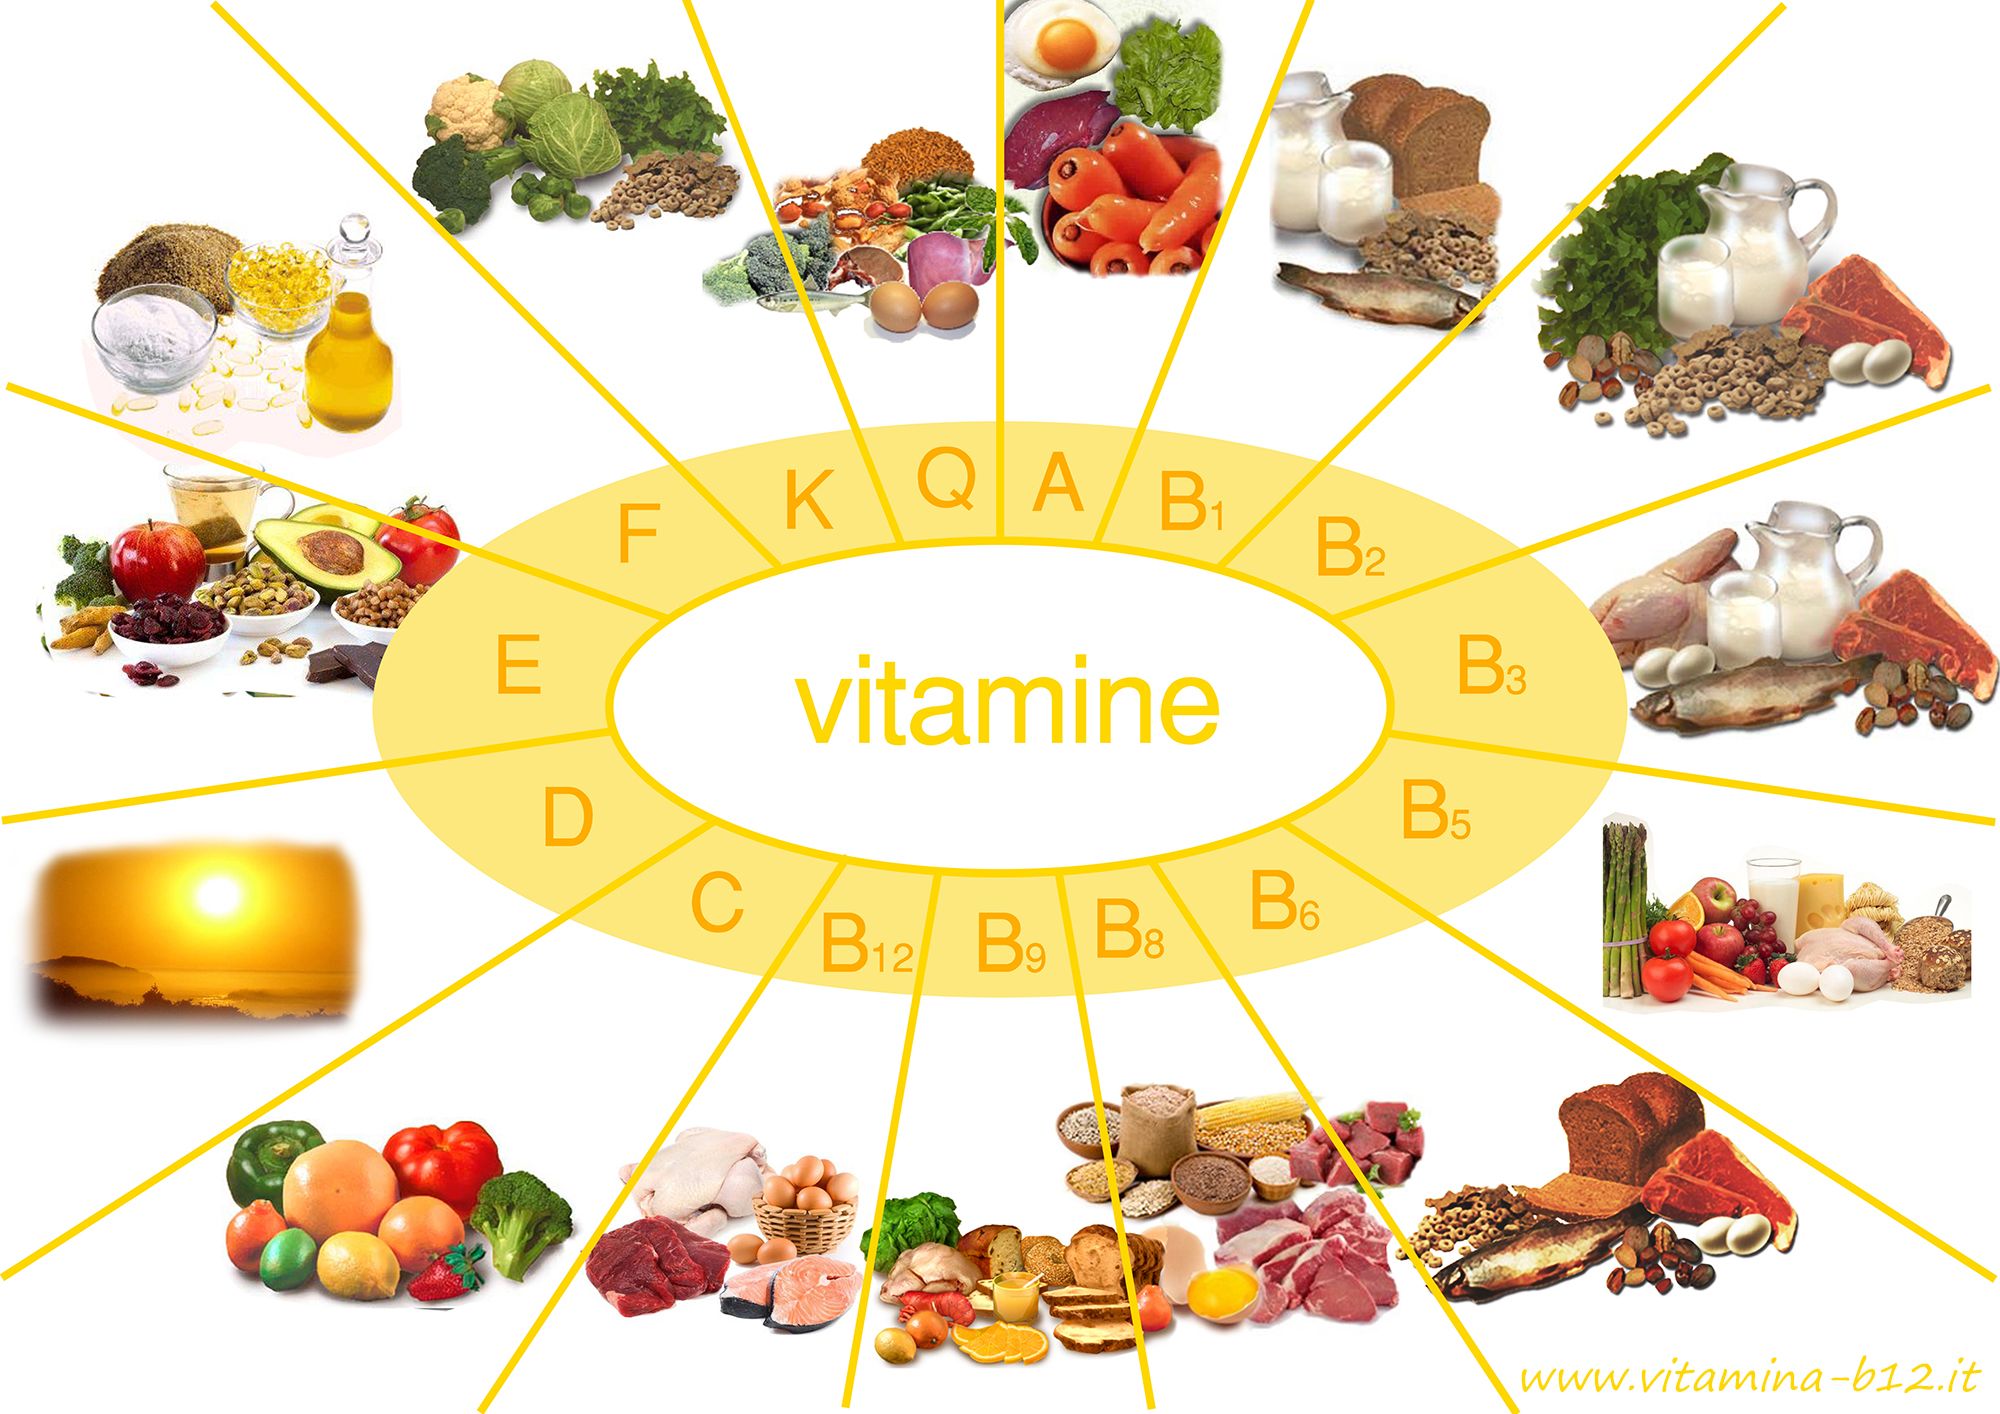 vitamine-come-e-quante-assumerne-quotidianamente-istruzioni-per-l-uso.jpg